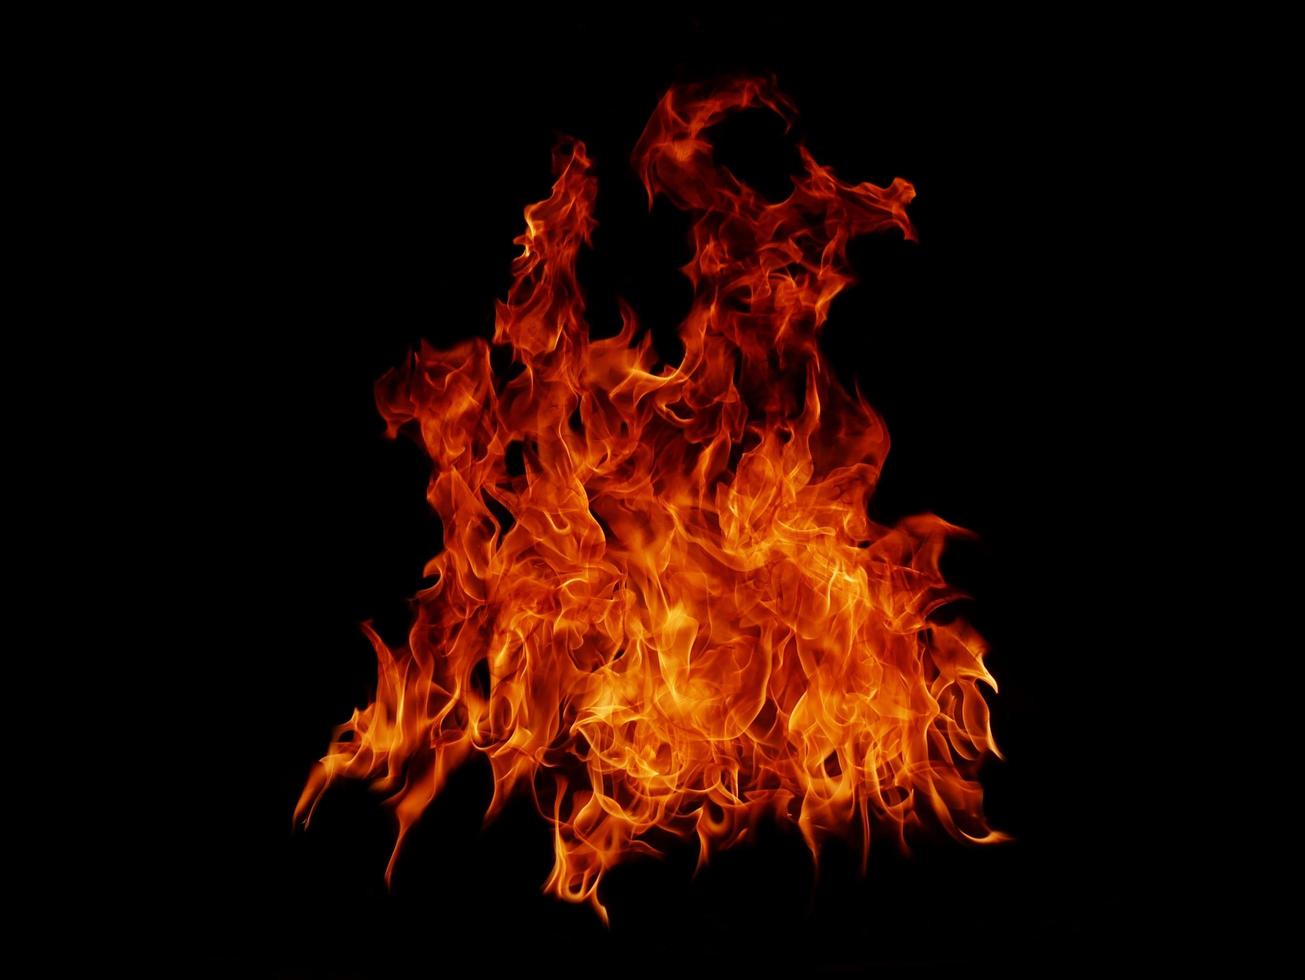 textura de chama de chama para carne de chama de fundo de fogo de forma estranha que é queimada do fogão ou de cozinhar. perigo sentindo abstrato preto adequado para banners ou anúncios. foto